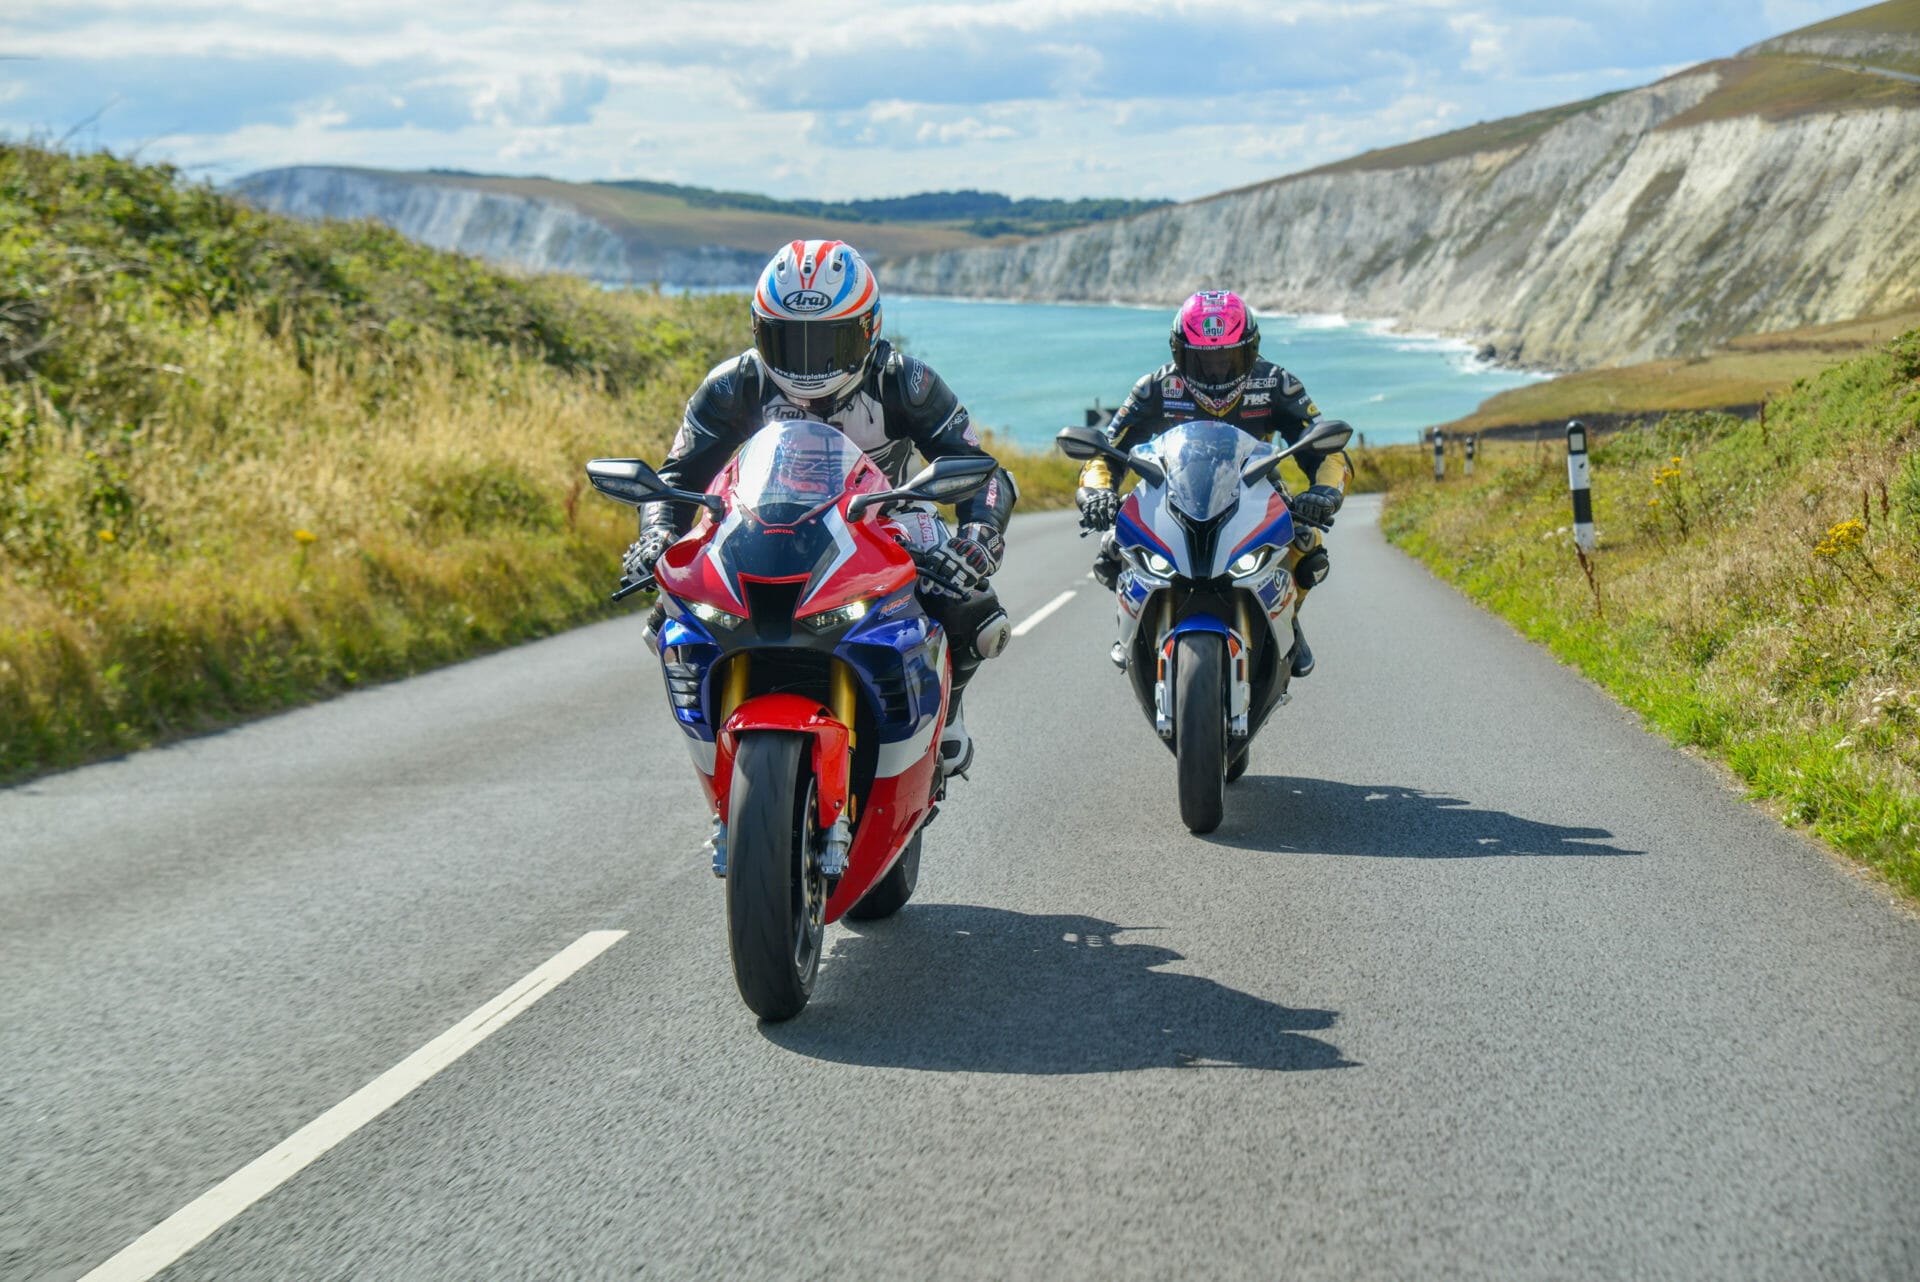 Road Racing auf der Isle of Wight soll stattfinden
- auch in der MOTORRAD NACHRICHTEN APP